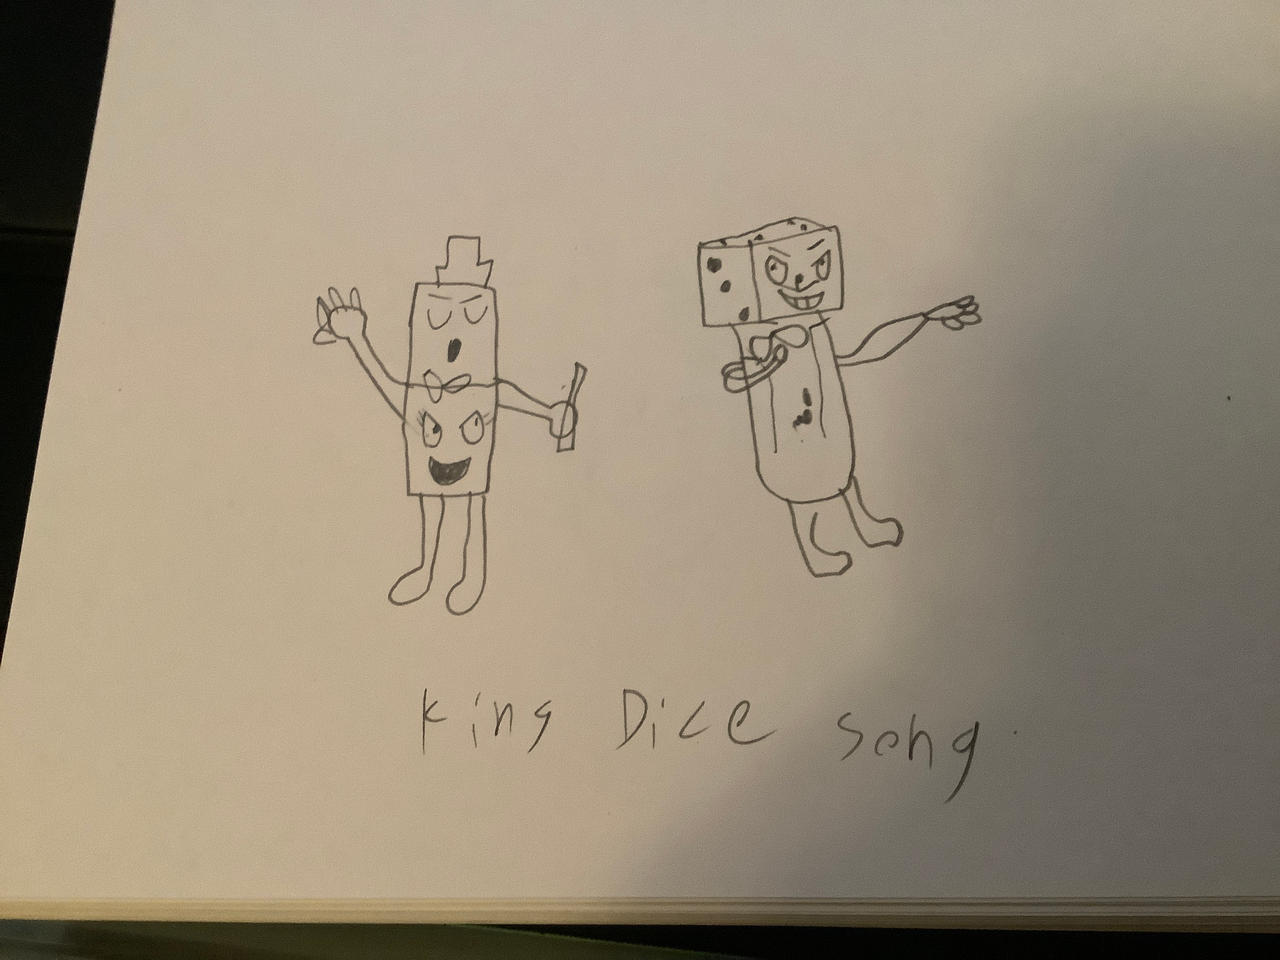 Mr king dice song by djrotom on DeviantArt